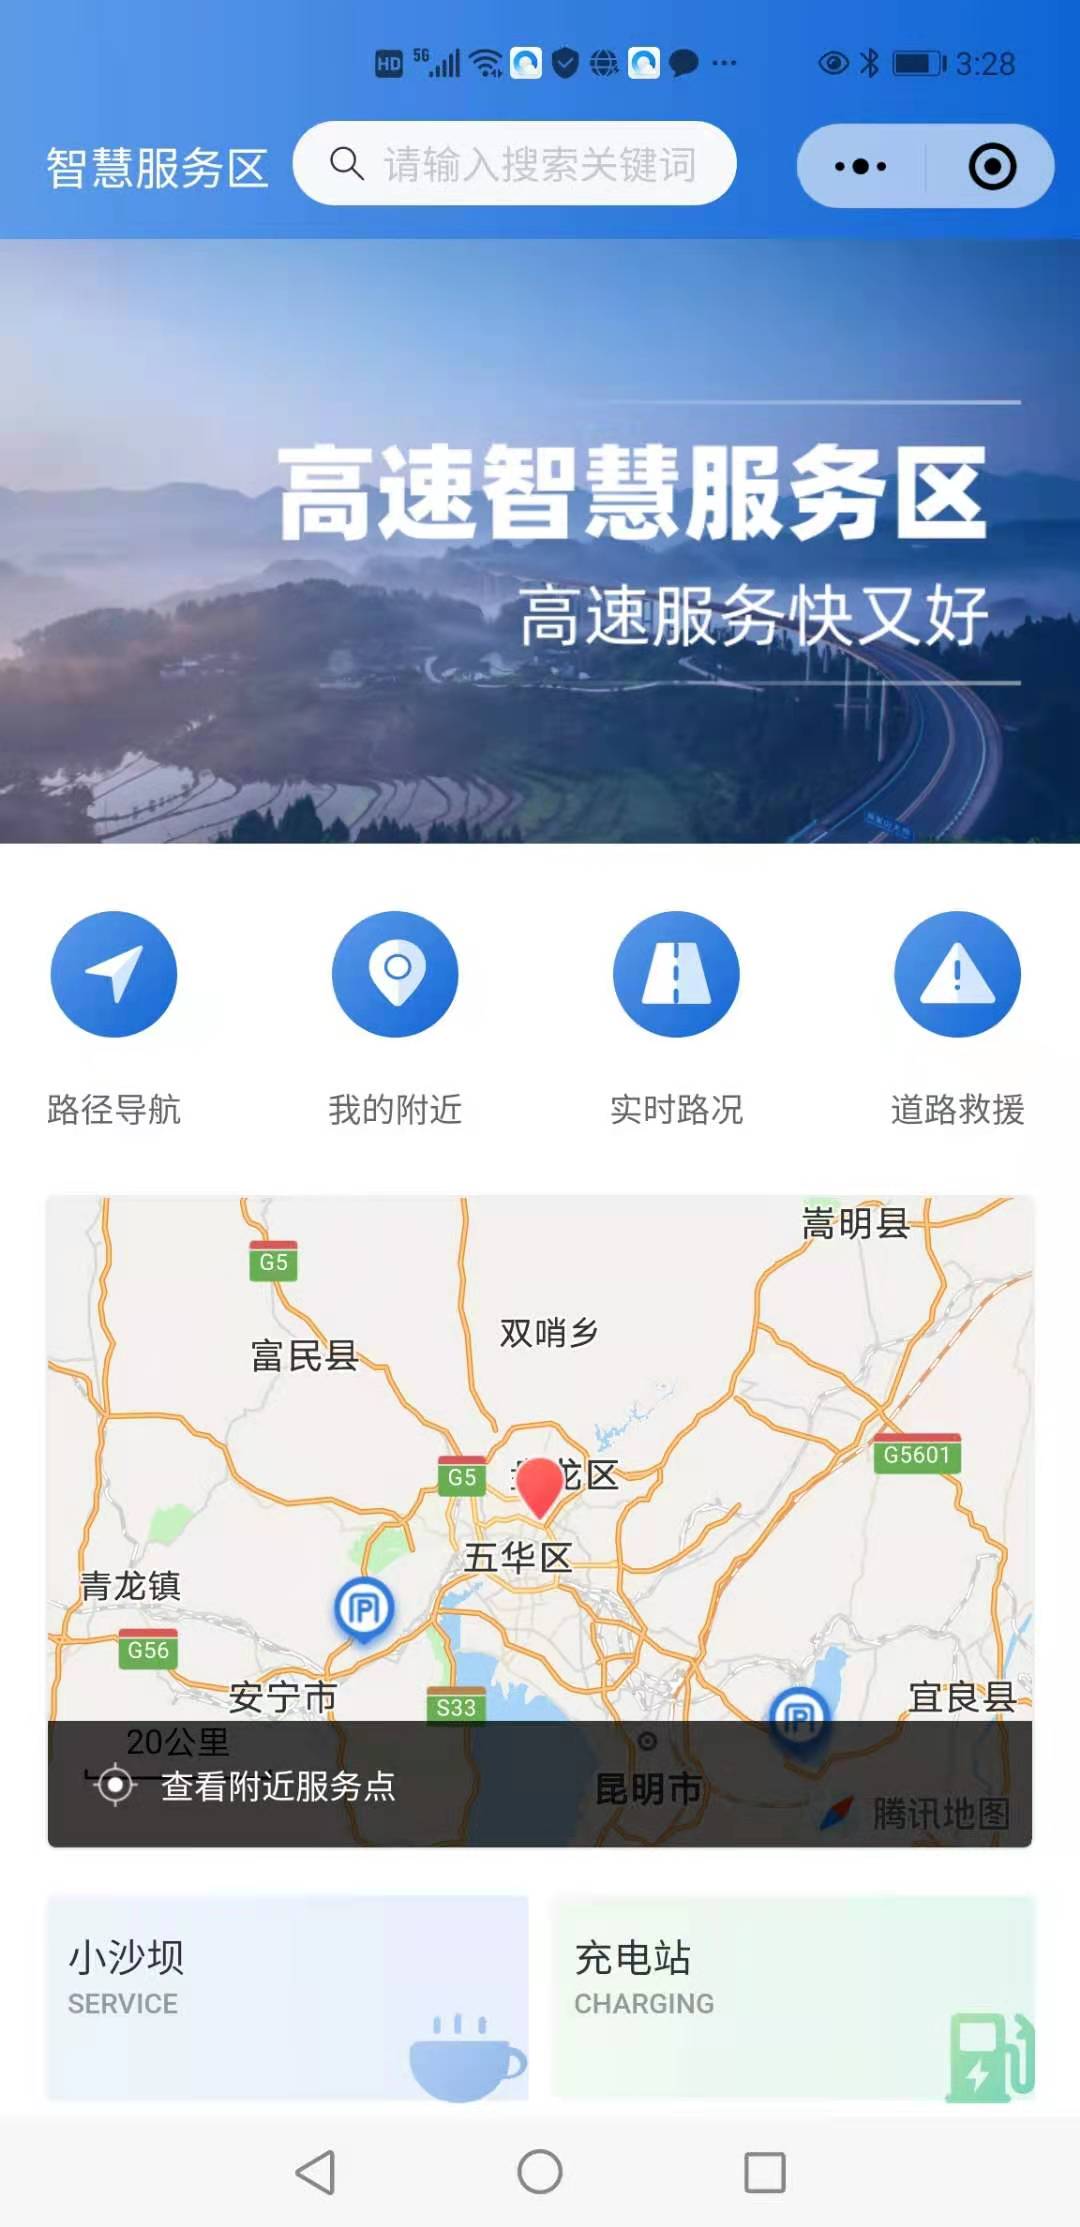 可查询实时路况、在线预订……云南高速公路智慧服务区正式上线